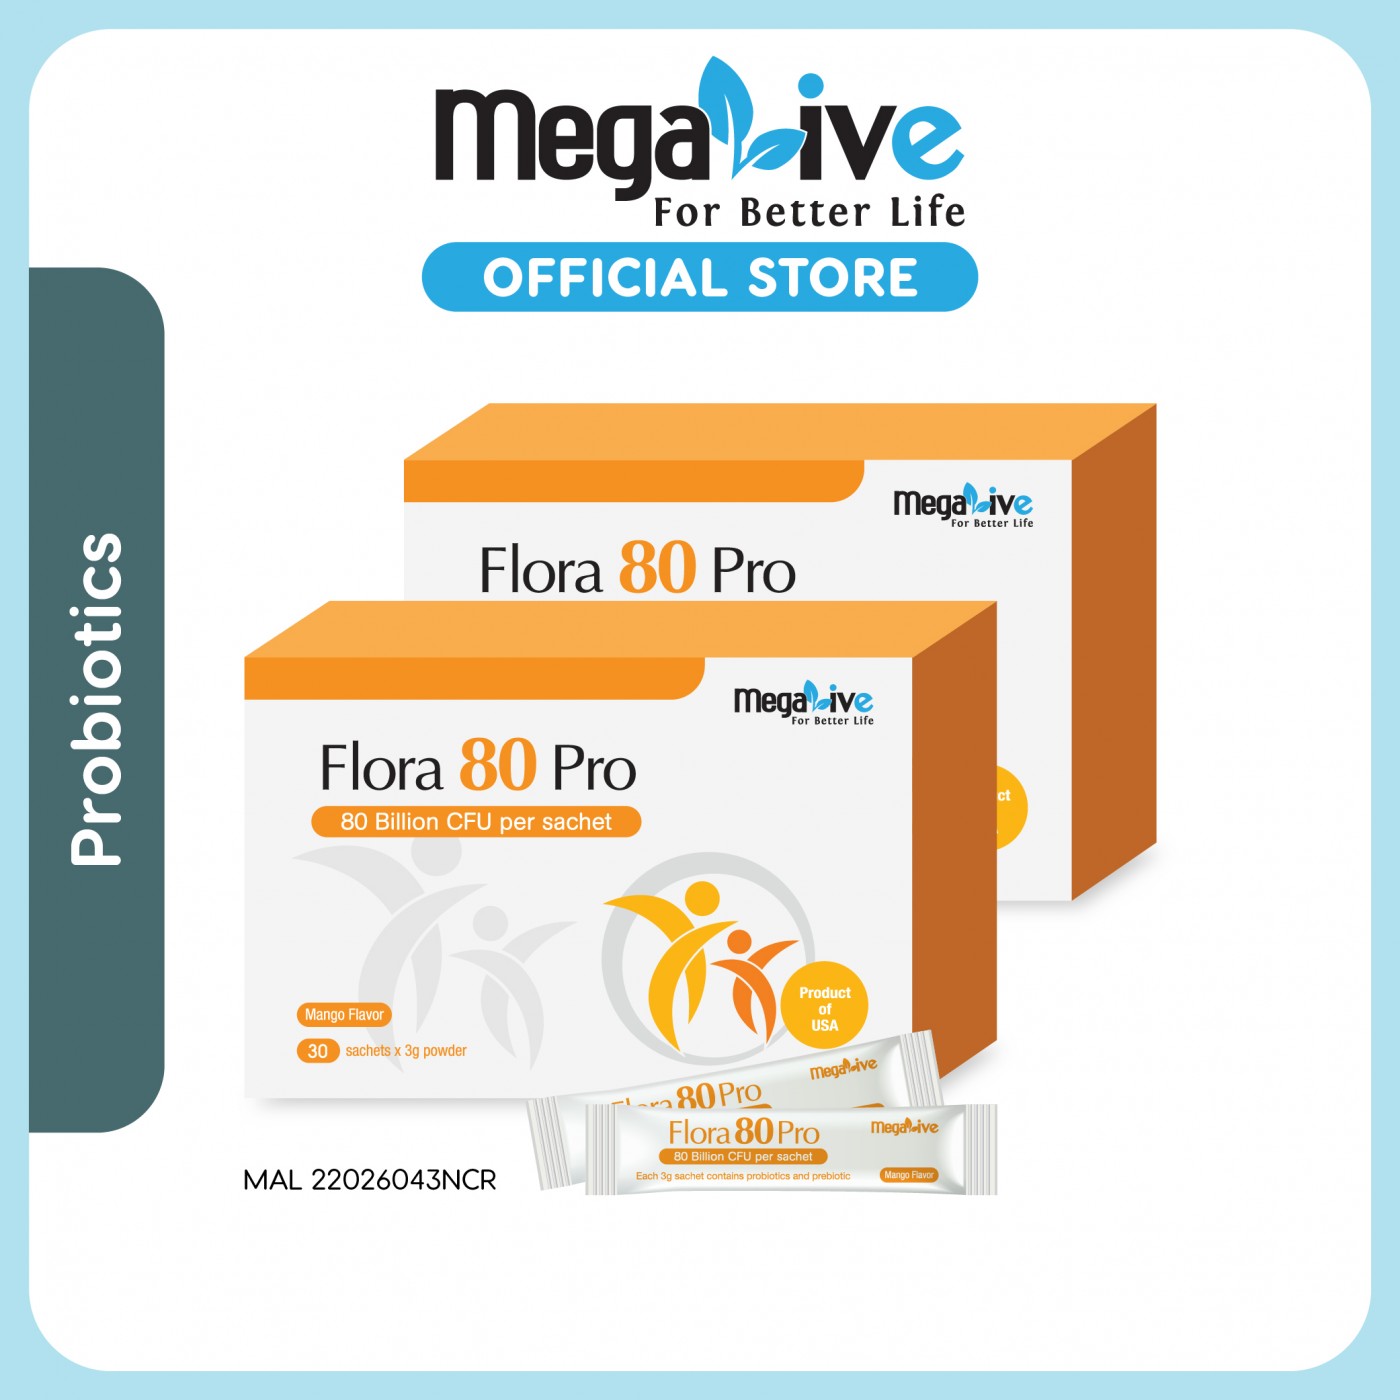 MegaLive Flora 80 Pro